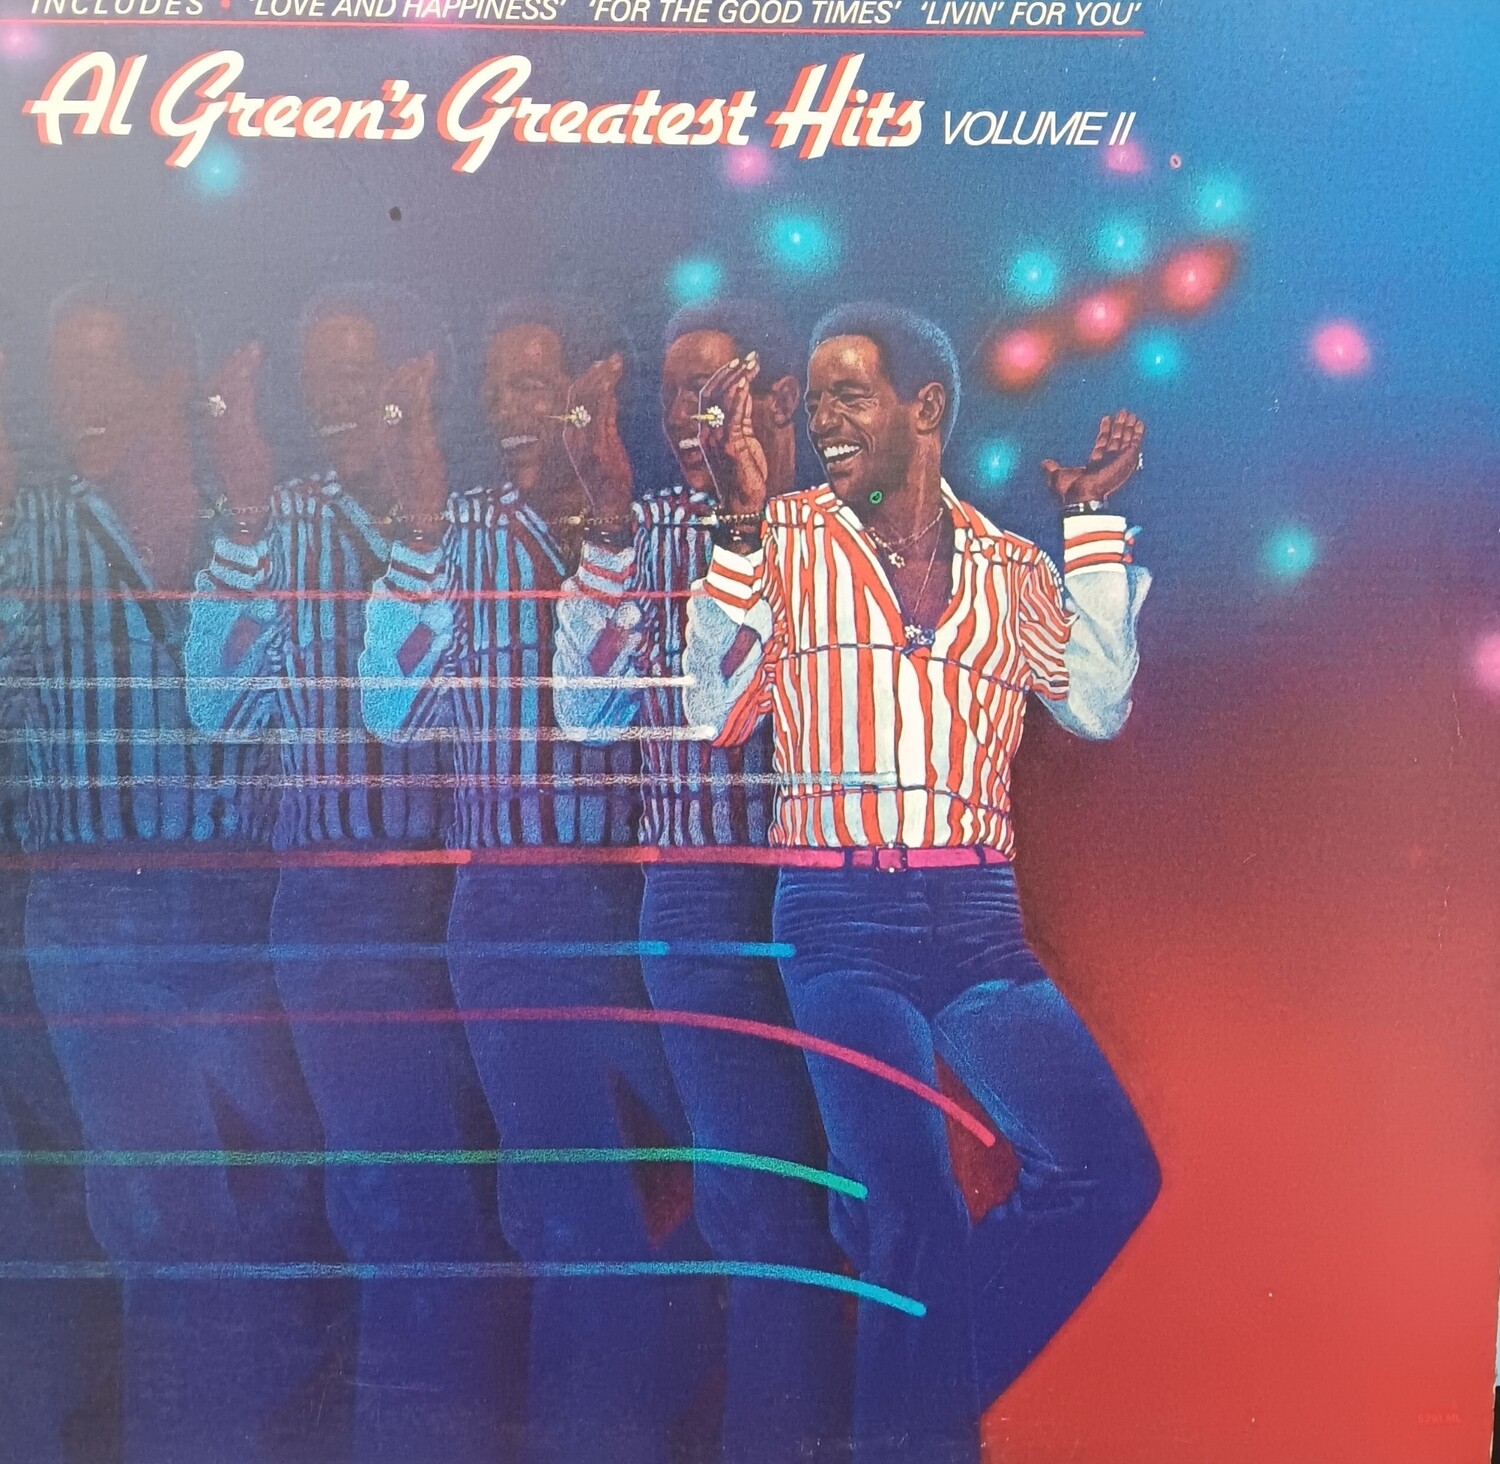 AL GREEN - Greatest hits volume II